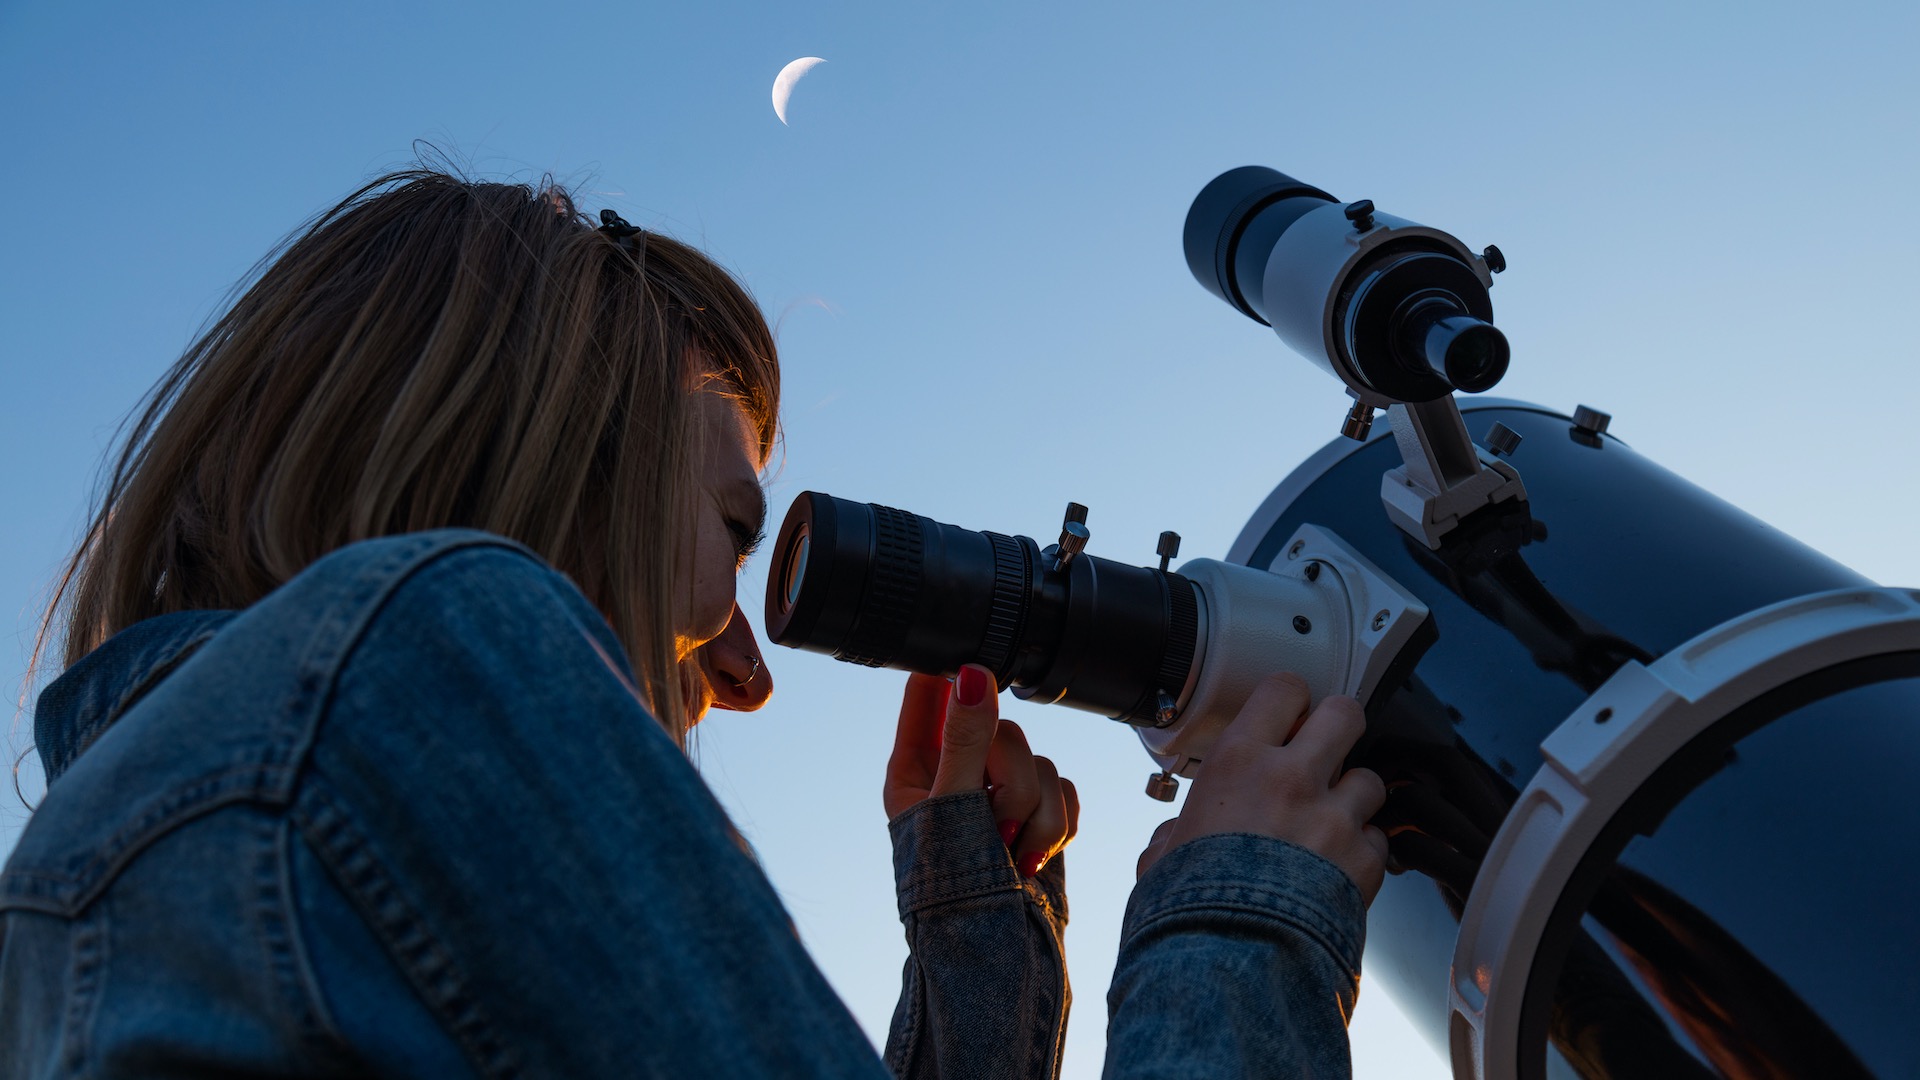 La scelta è ampia e la consulenza è importante. Con il telescopio giusto puoi muovere i primi passi nel mondo dell'astronomia. AstroStar/Shutterstock.com